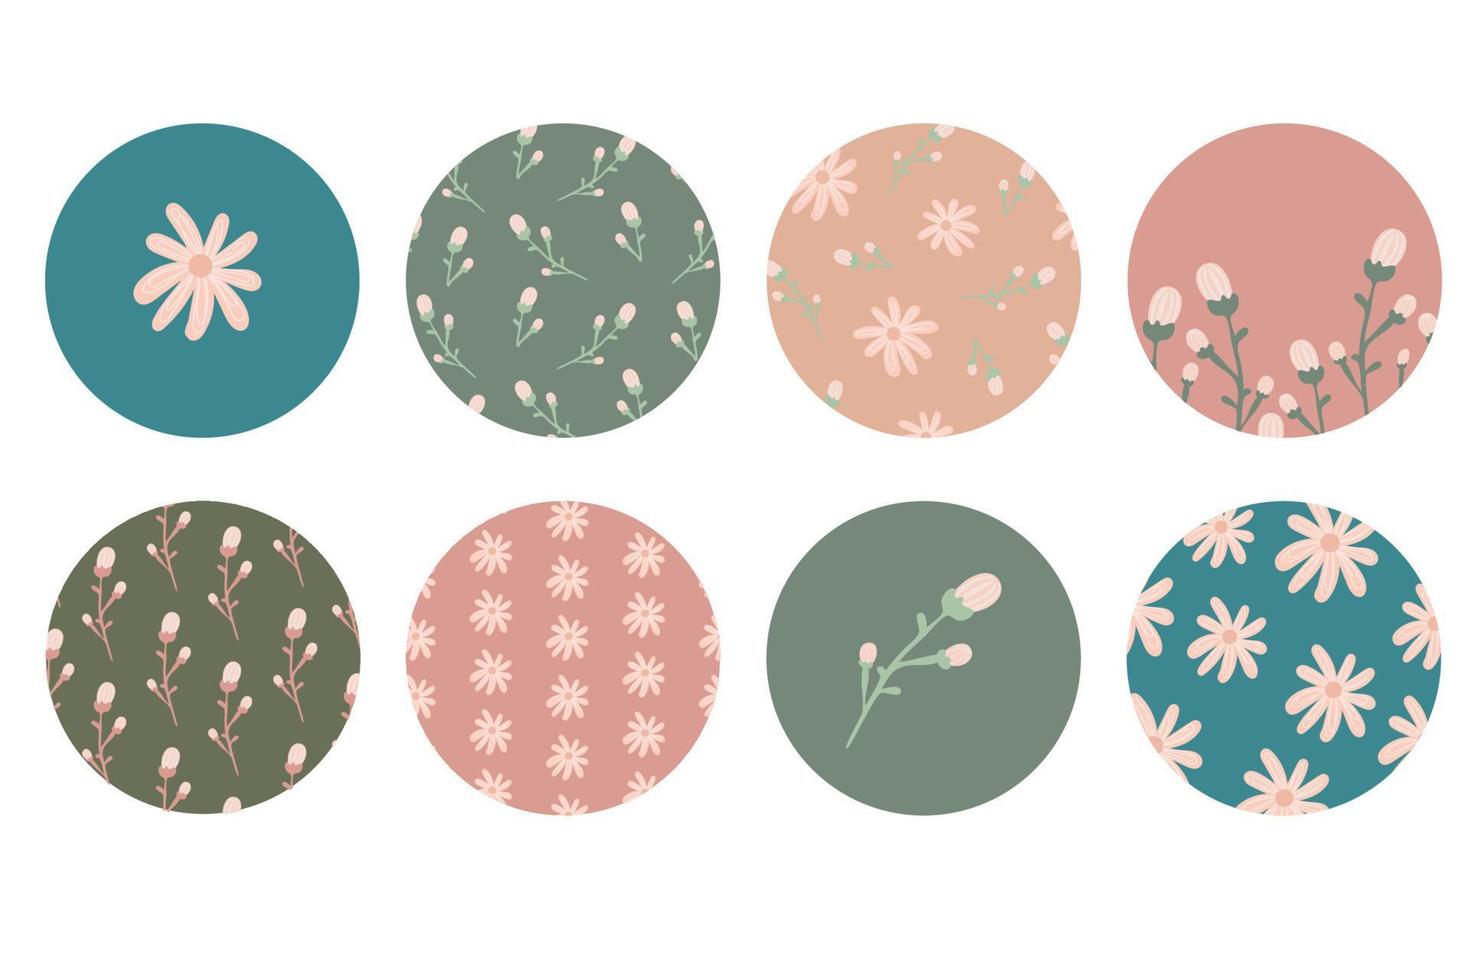 markeer cover set, bloemen botanische iconen voor sociale media. vectorillustratie. bloem ontwerp. set verhaal hoogtepunten omvat pictogrammen. schattige zachte highlight-sjabloon vector